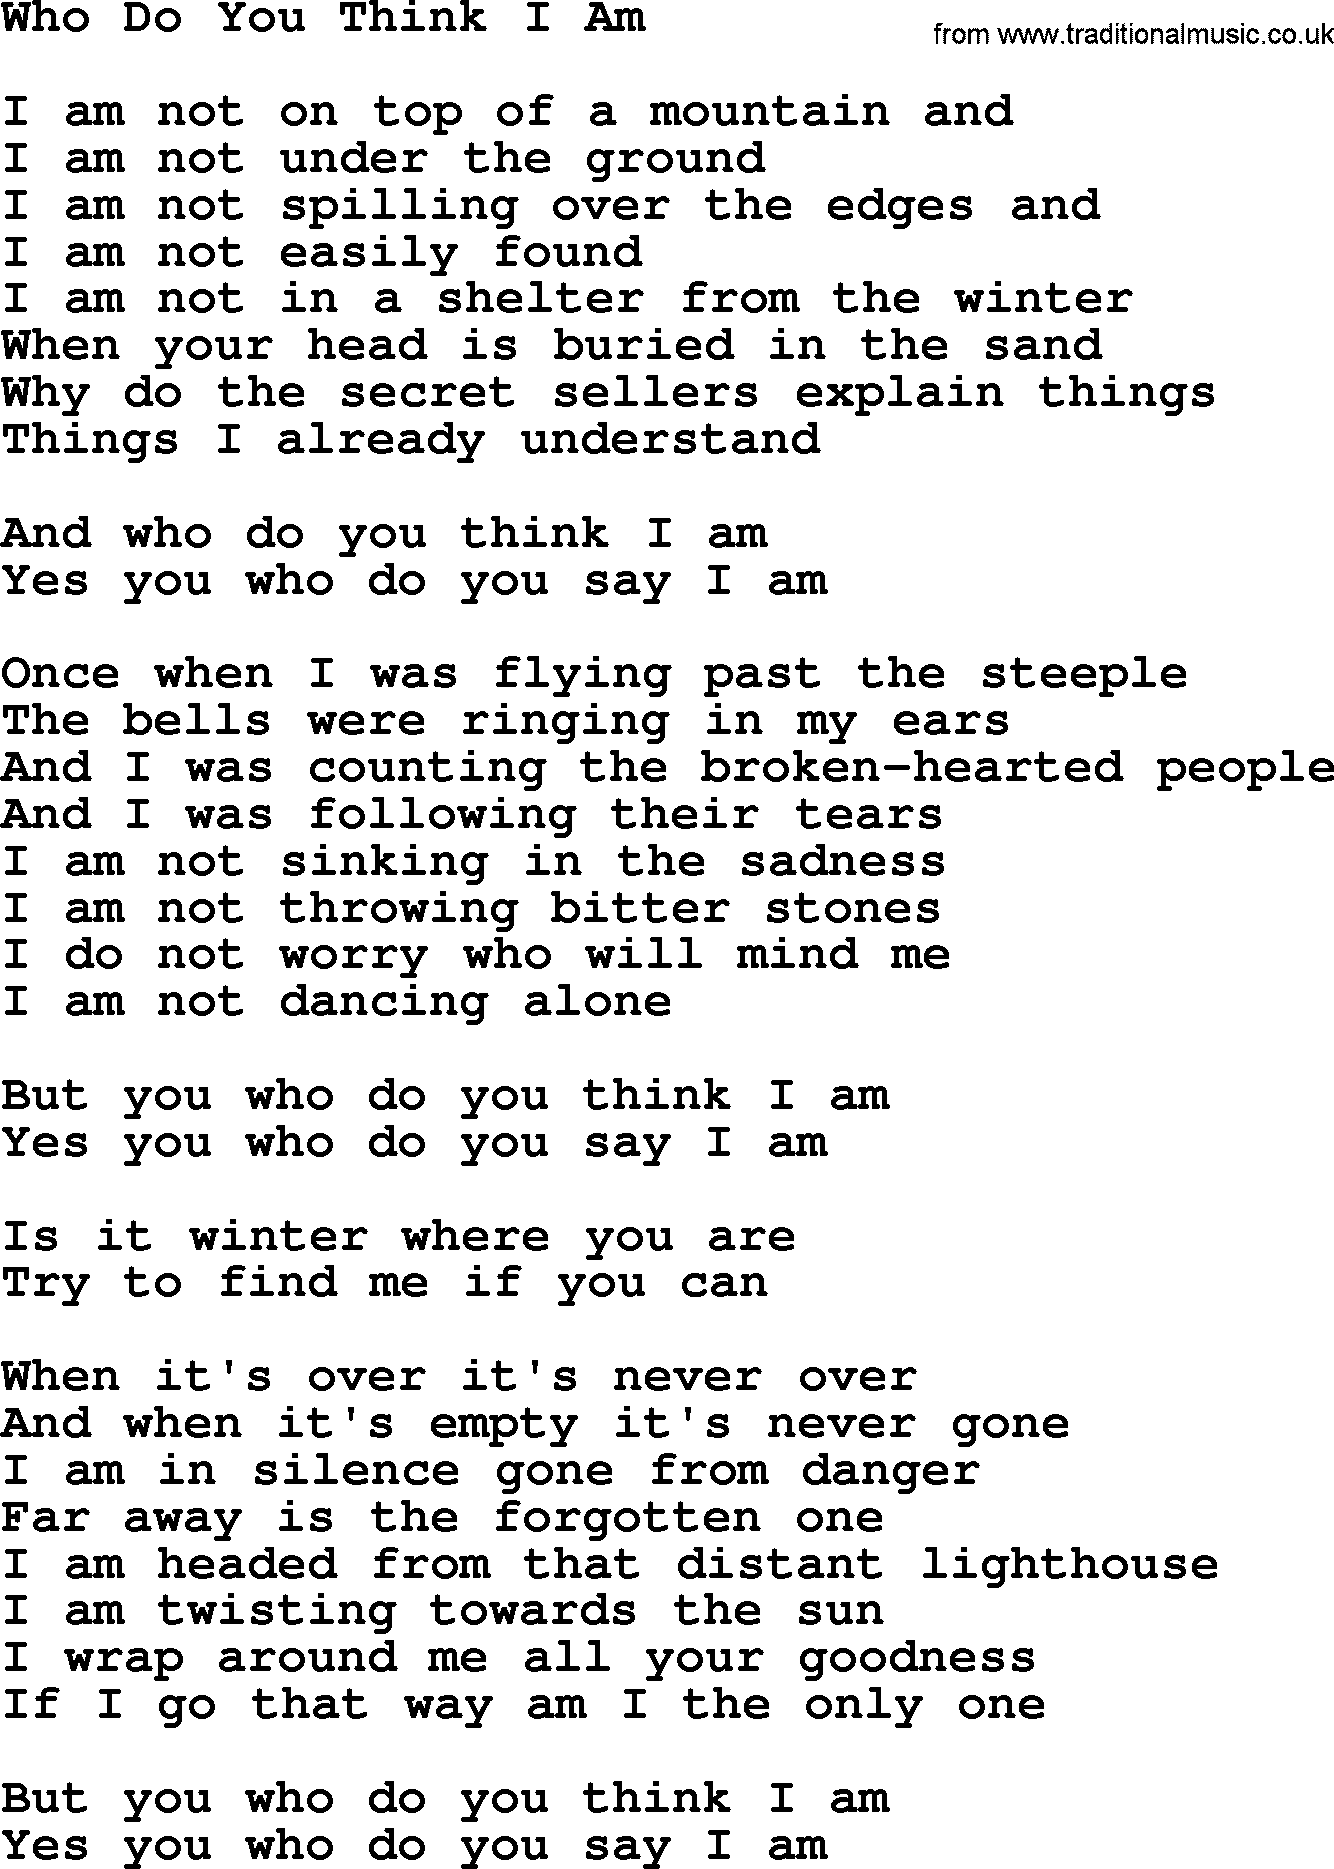 Joan Baez song Who Do You Think I Am, lyrics